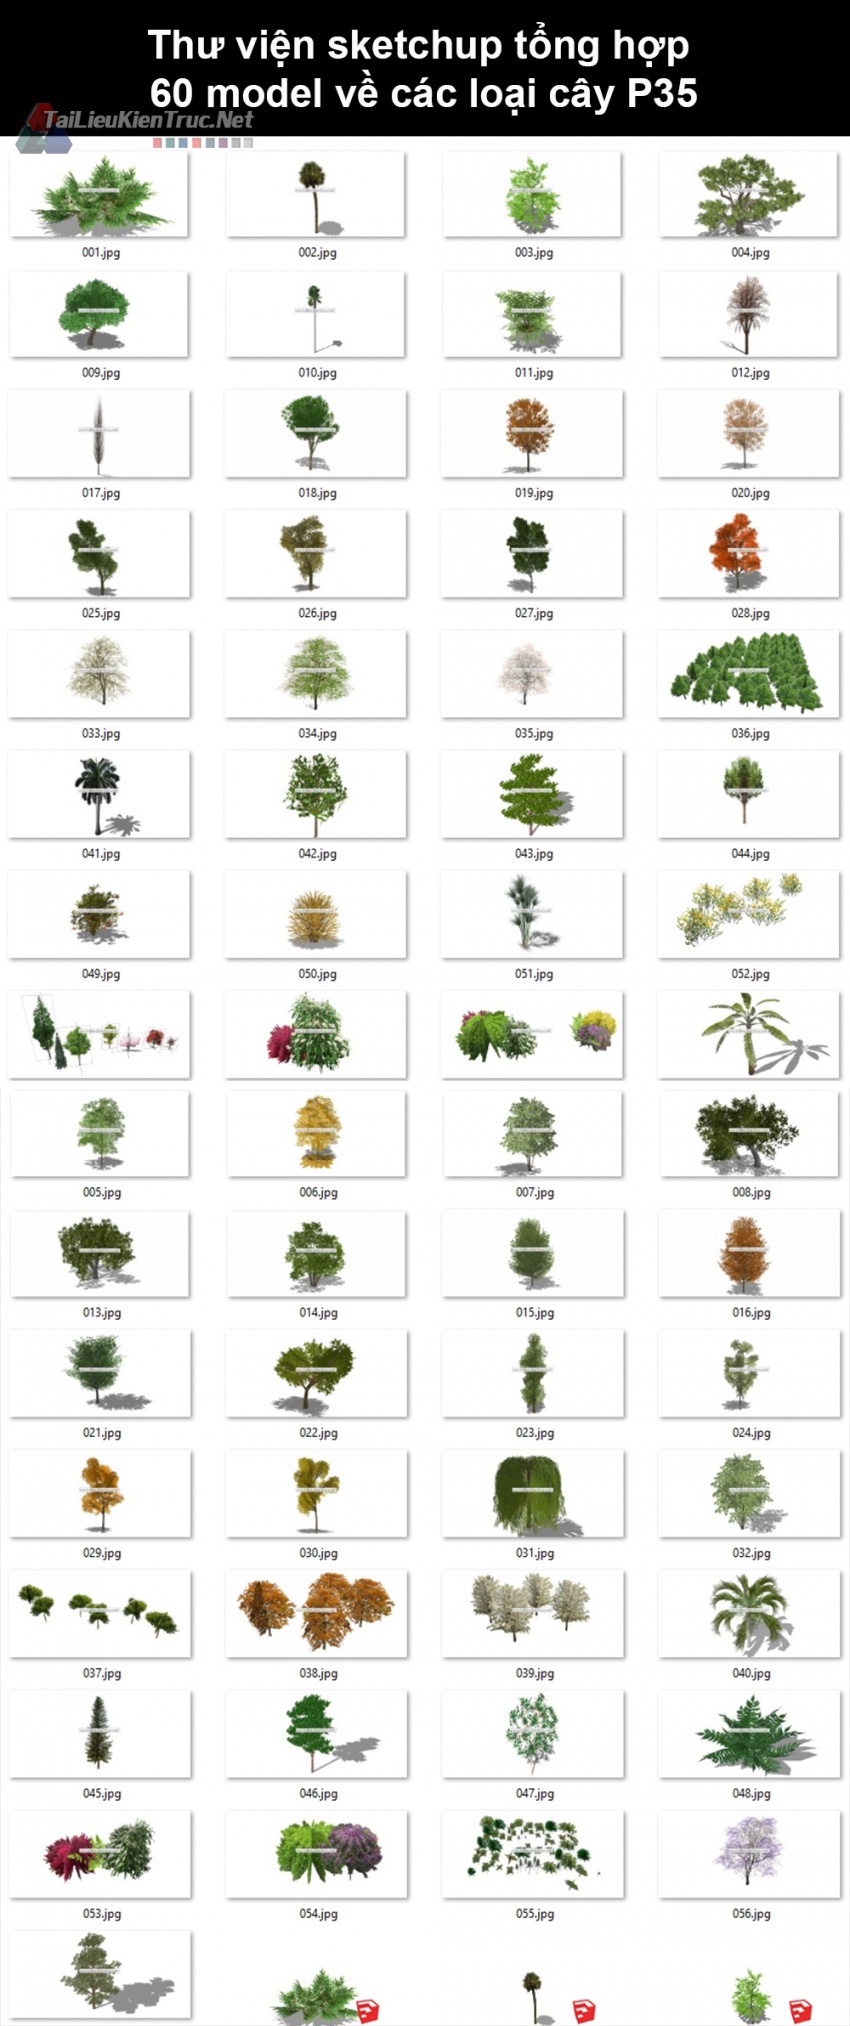 Thư viện Sketchup tổng hợp 60 Model về các loại cây cối P35